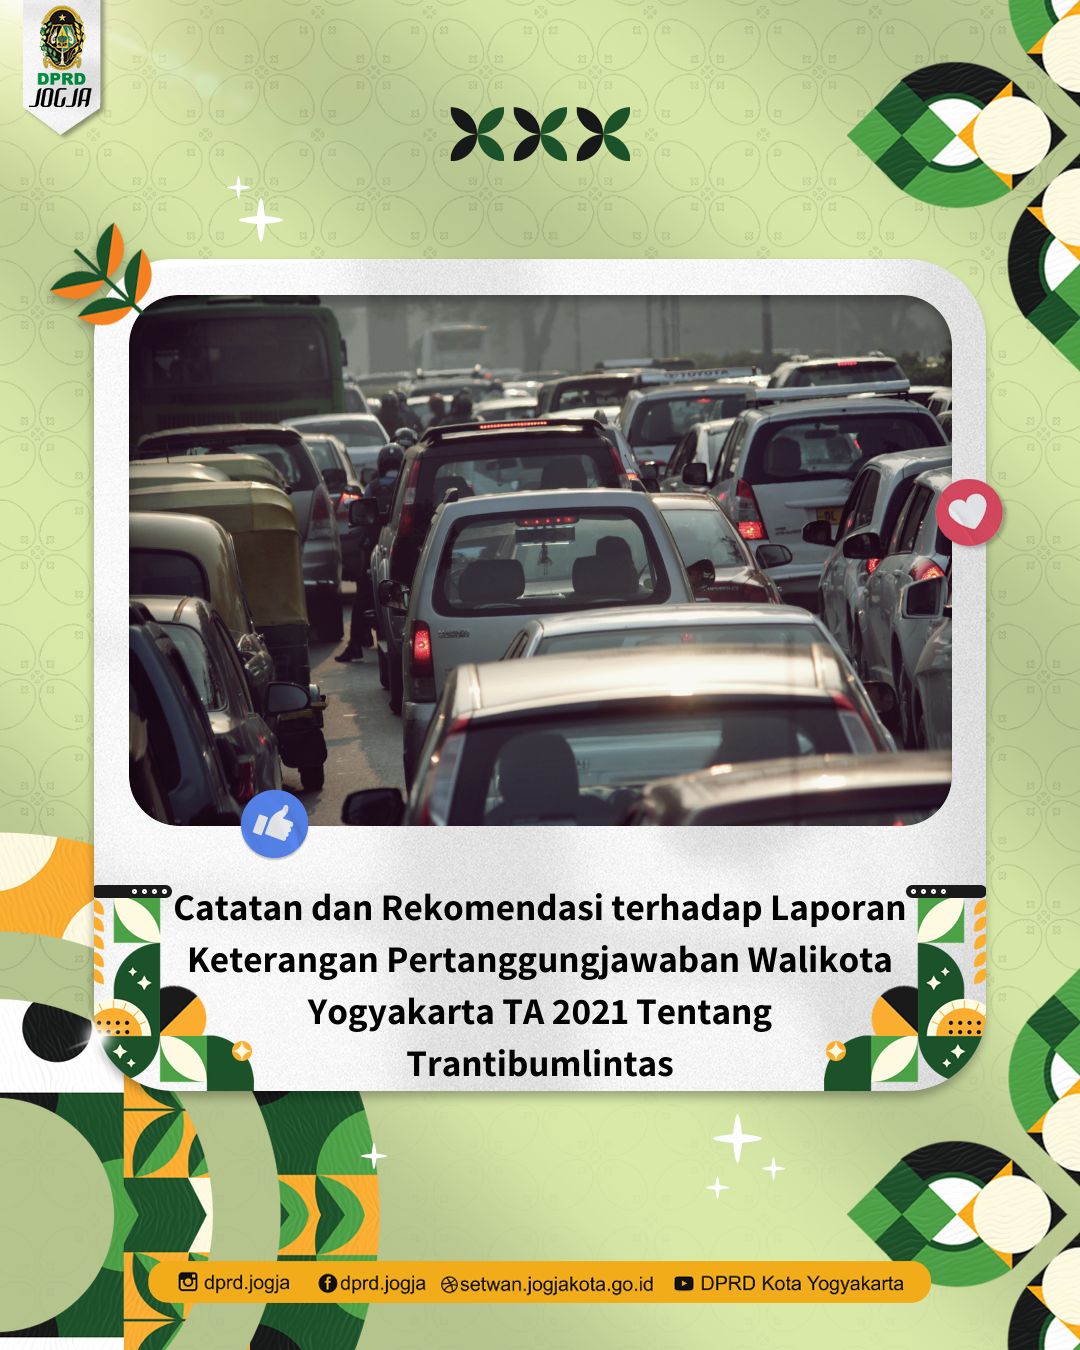 Catatan dan Rekomendasi terhadap Laporan Keterangan Pertanggungjawaban Walikota Yogyakarta TA 2021 Tentang Trantibumlintas